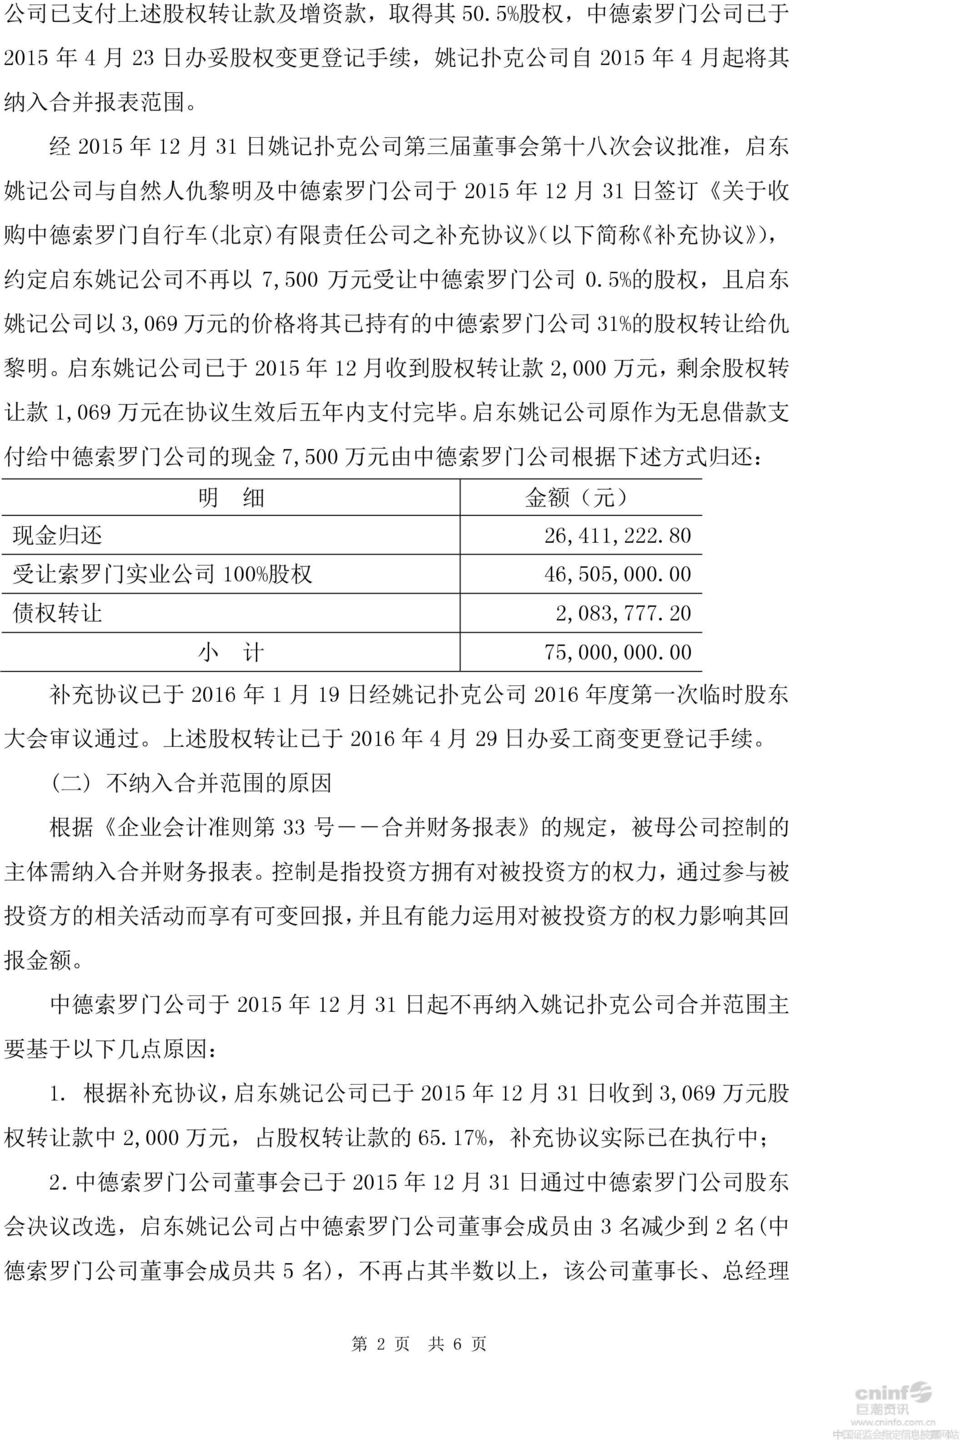 德 索 罗 门 公 司 于 2015 年 12 月 31 日 签 订 关 于 收 购 中 德 索 罗 门 自 行 车 ( 北 京 ) 有 限 责 任 公 司 之 补 充 协 议 ( 以 下 简 称 补 充 协 议 ), 约 定 启 东 姚 记 公 司 不 再 以 7,500 万 元 受 让 中 德 索 罗 门 公 司 0.